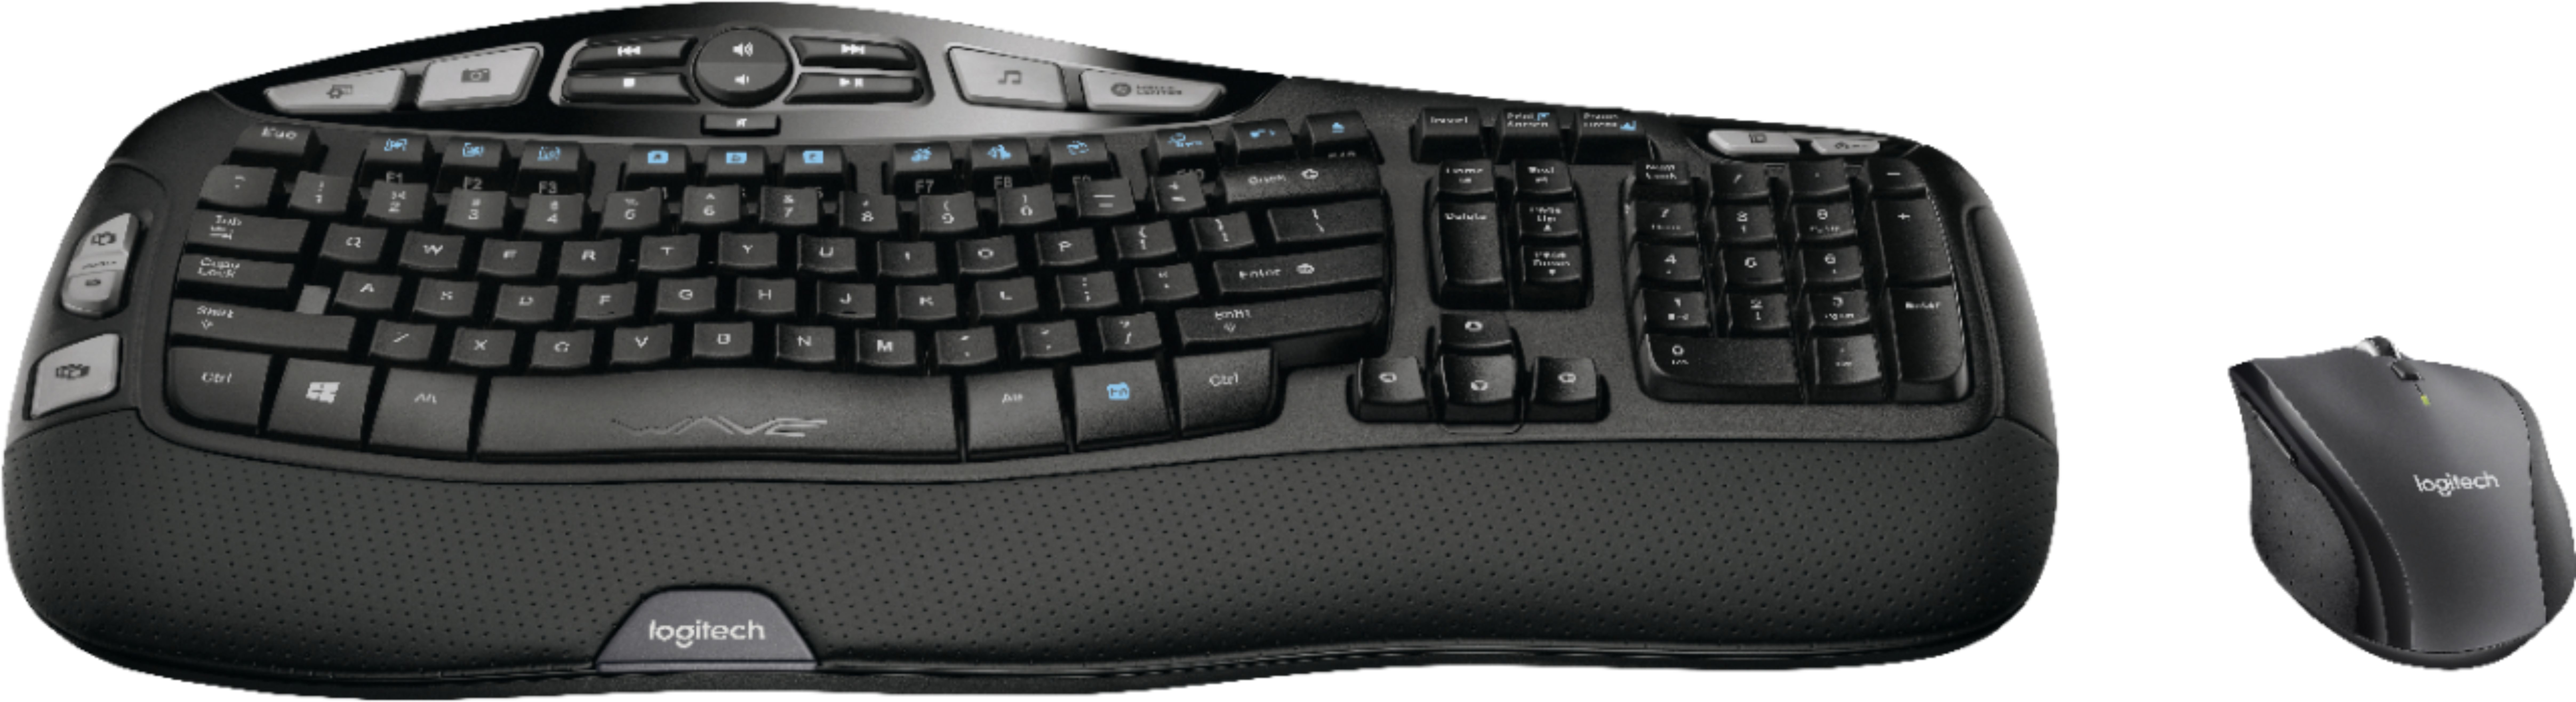 kan niet zien Laboratorium Een zekere Best Buy: Logitech MK570 Ergonomic Wireless Optical Comfort Wave Keyboard  and Mouse Black 920-008001